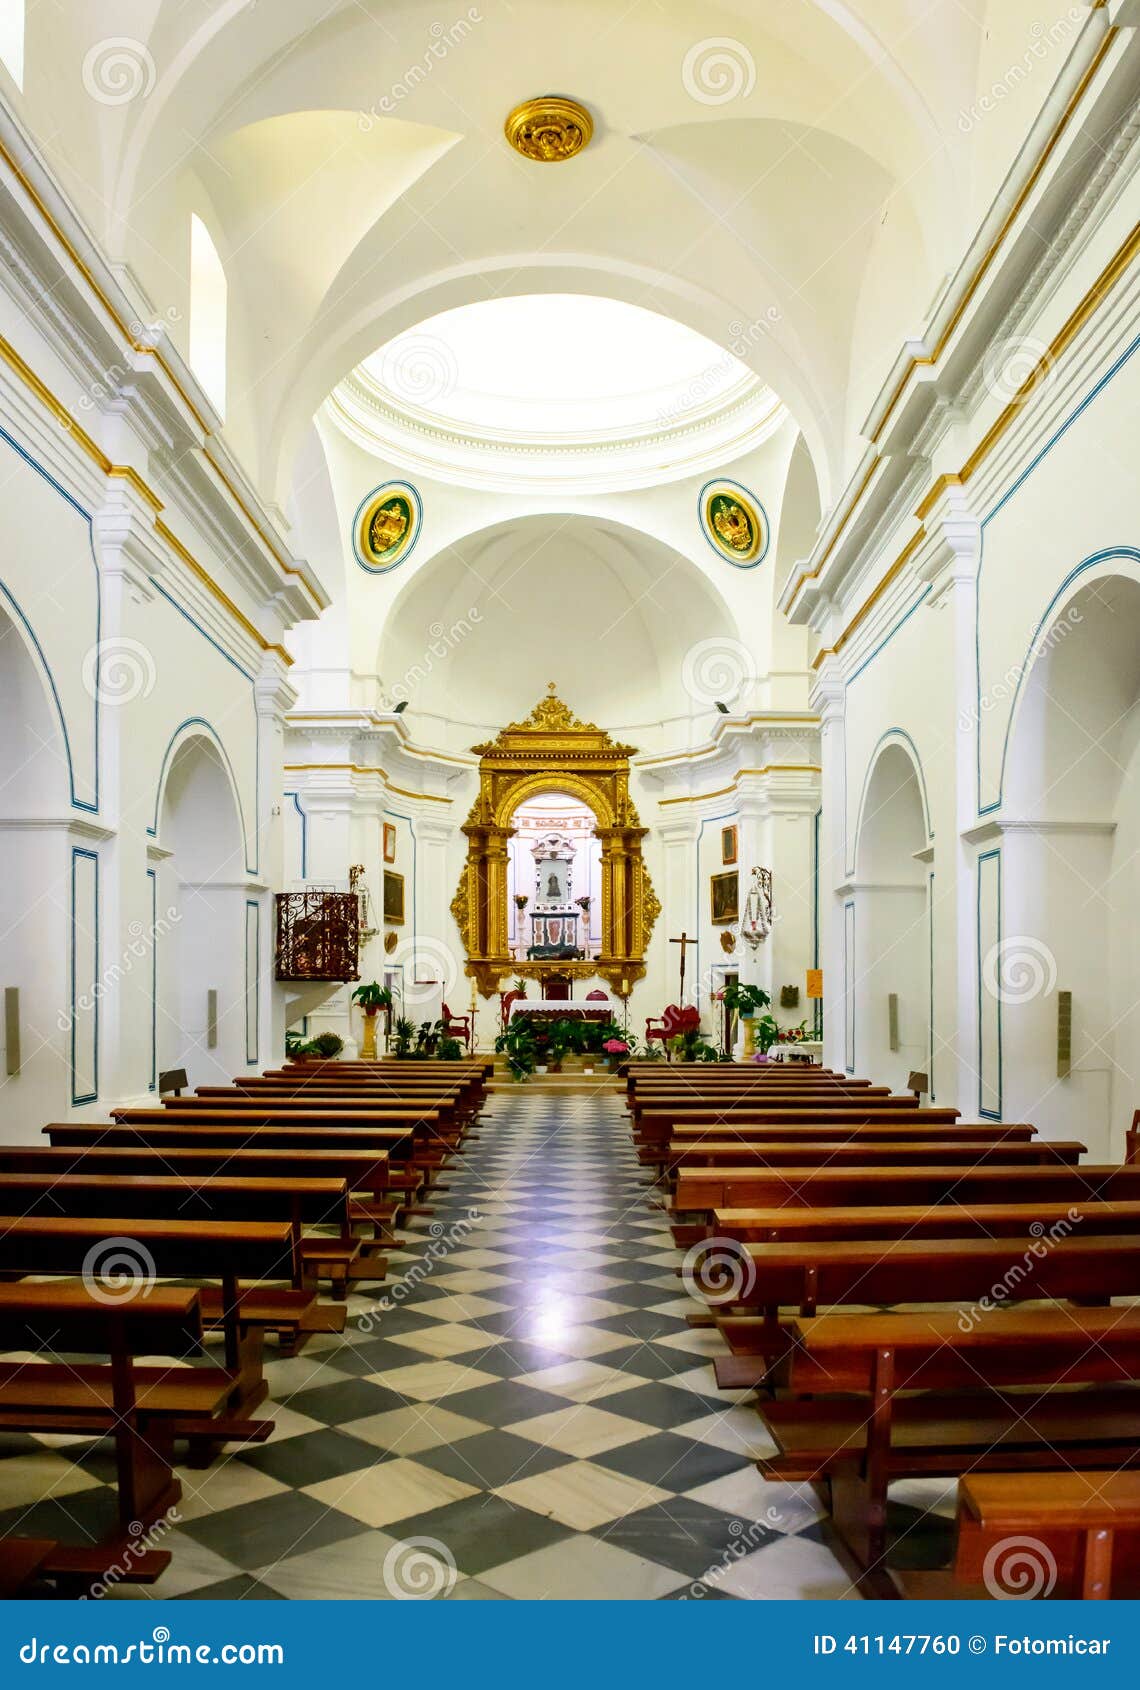 inside the chapel at virgen del saliente